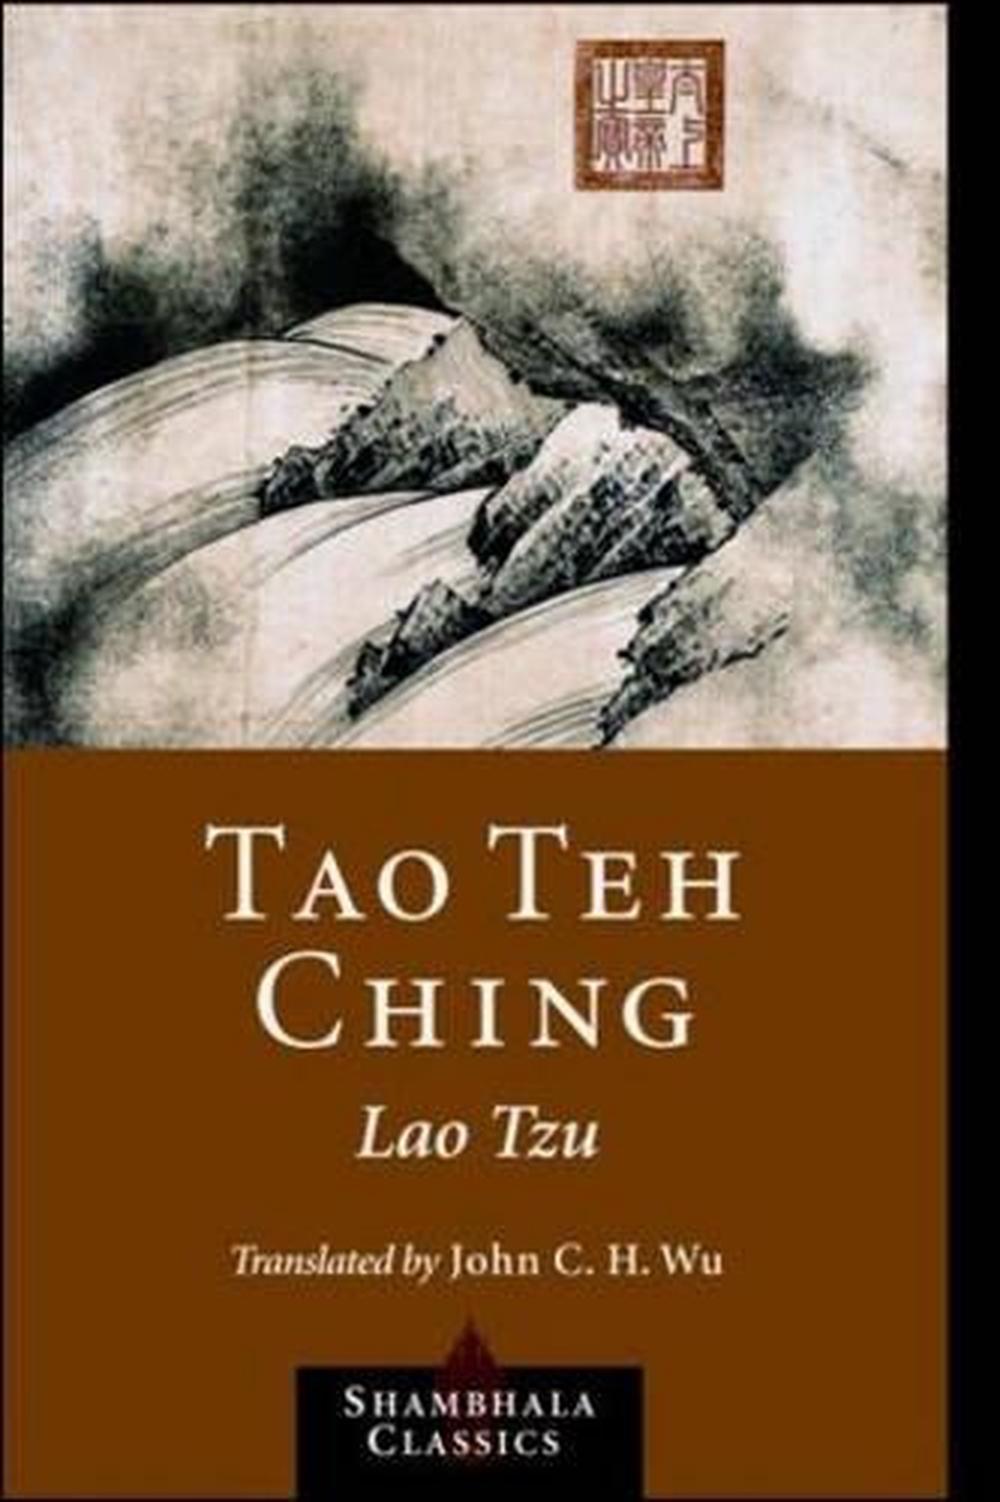 Tao Te Ching Of Lao Tzu Analysis